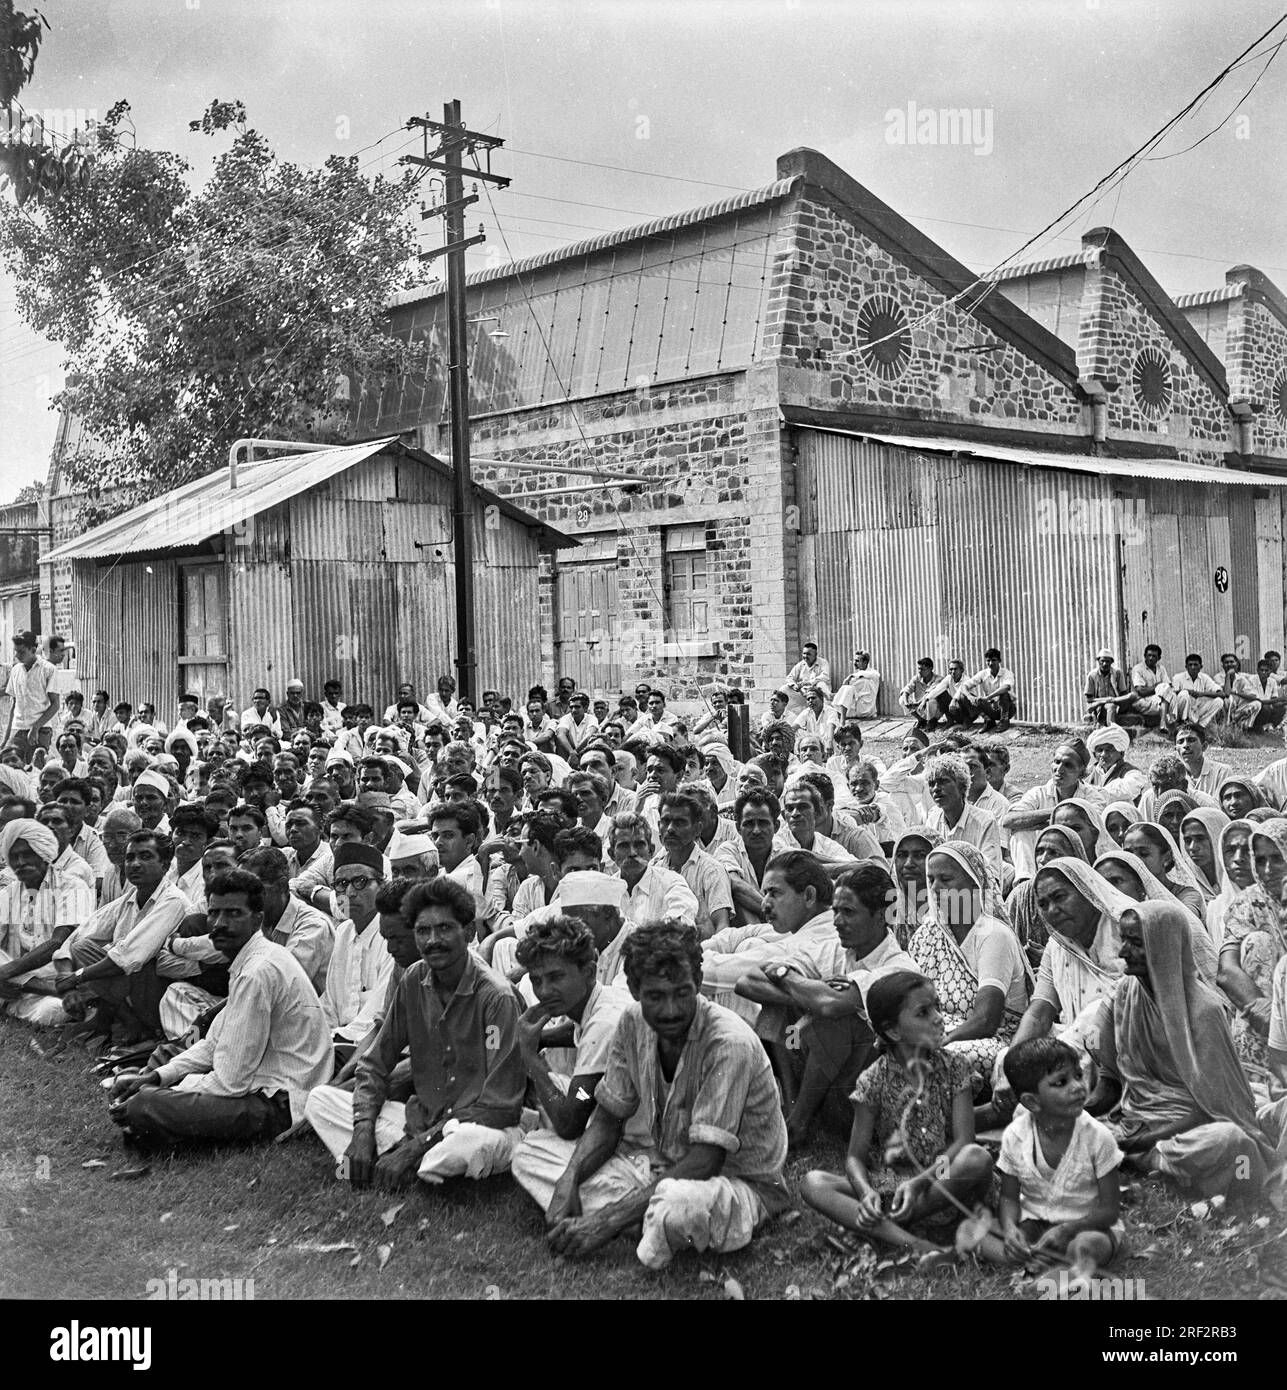 Vieux vintage des années 1900 photo en noir et blanc des hommes indiens femmes protestent soutenir le mouvement de liberté India 1940s. Banque D'Images